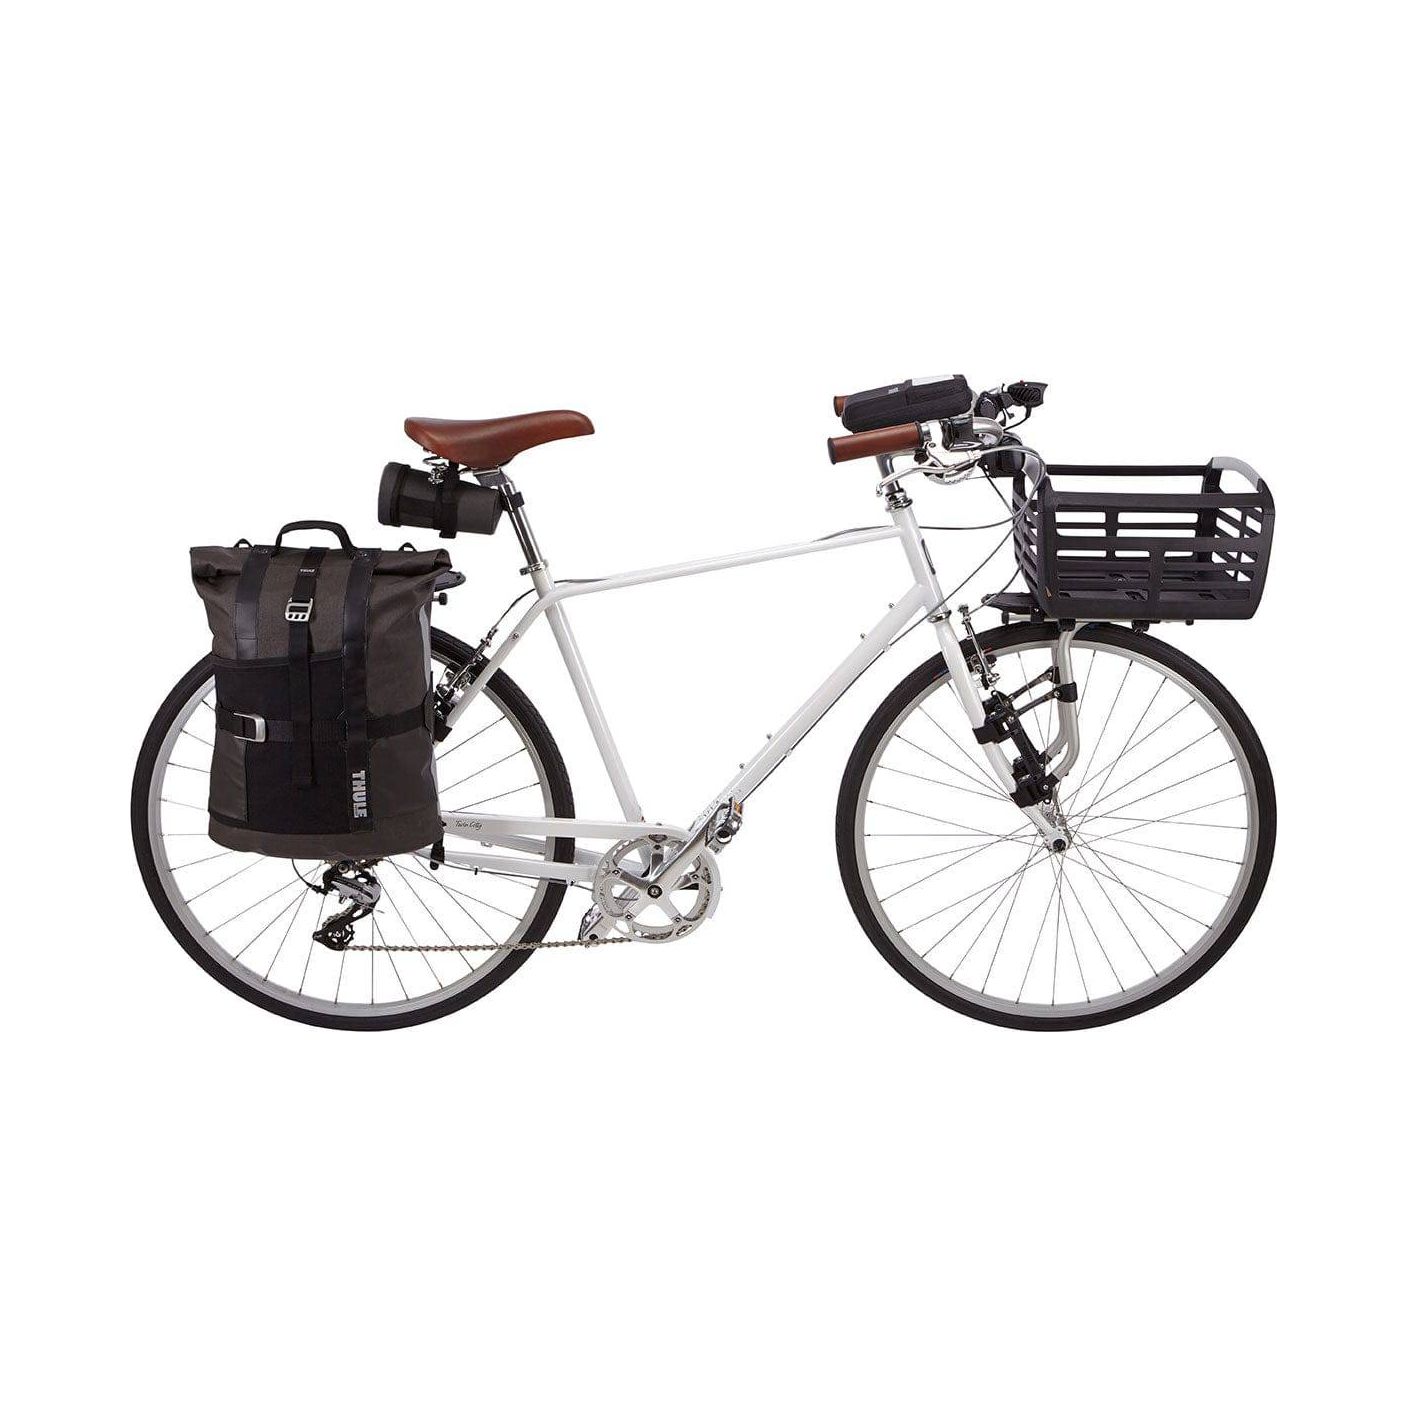 Thule - Pack 'n Pedal Bike Basket - Power in Motion